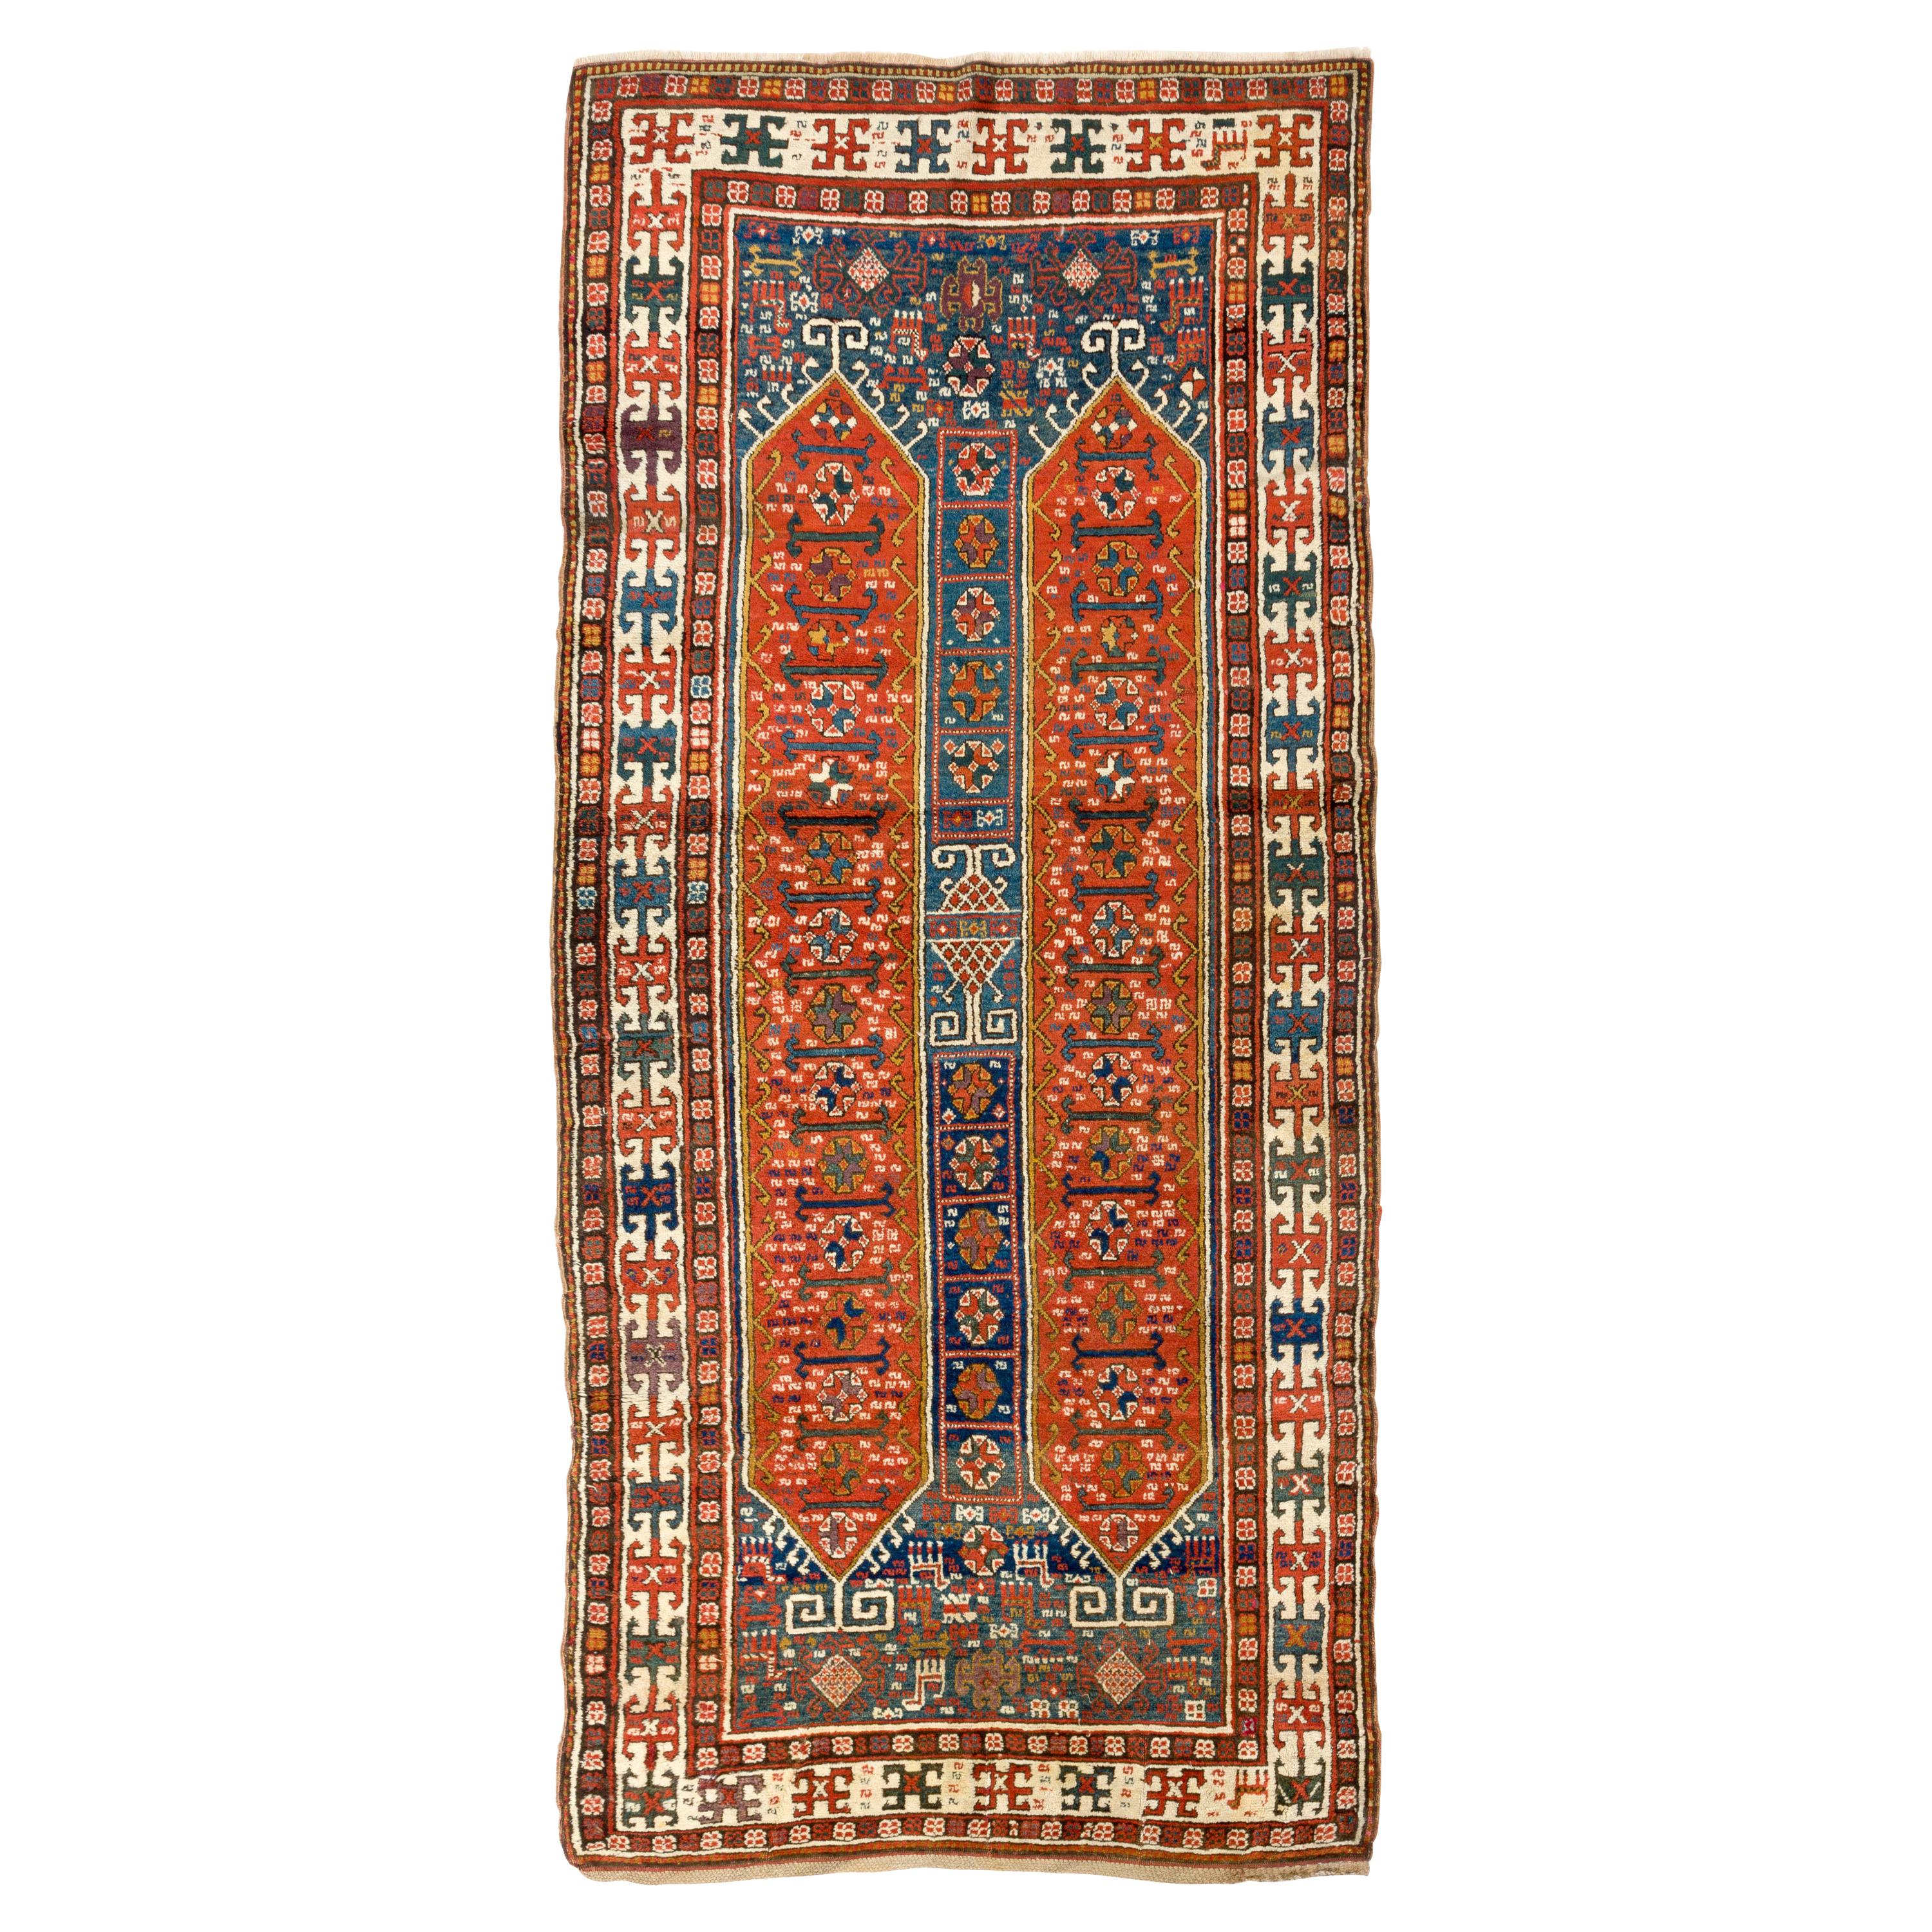 Antique Caucasian Karabakh Runner Rug, Tribal Carpet, Full Pile. 4.2 x 9.3 ft